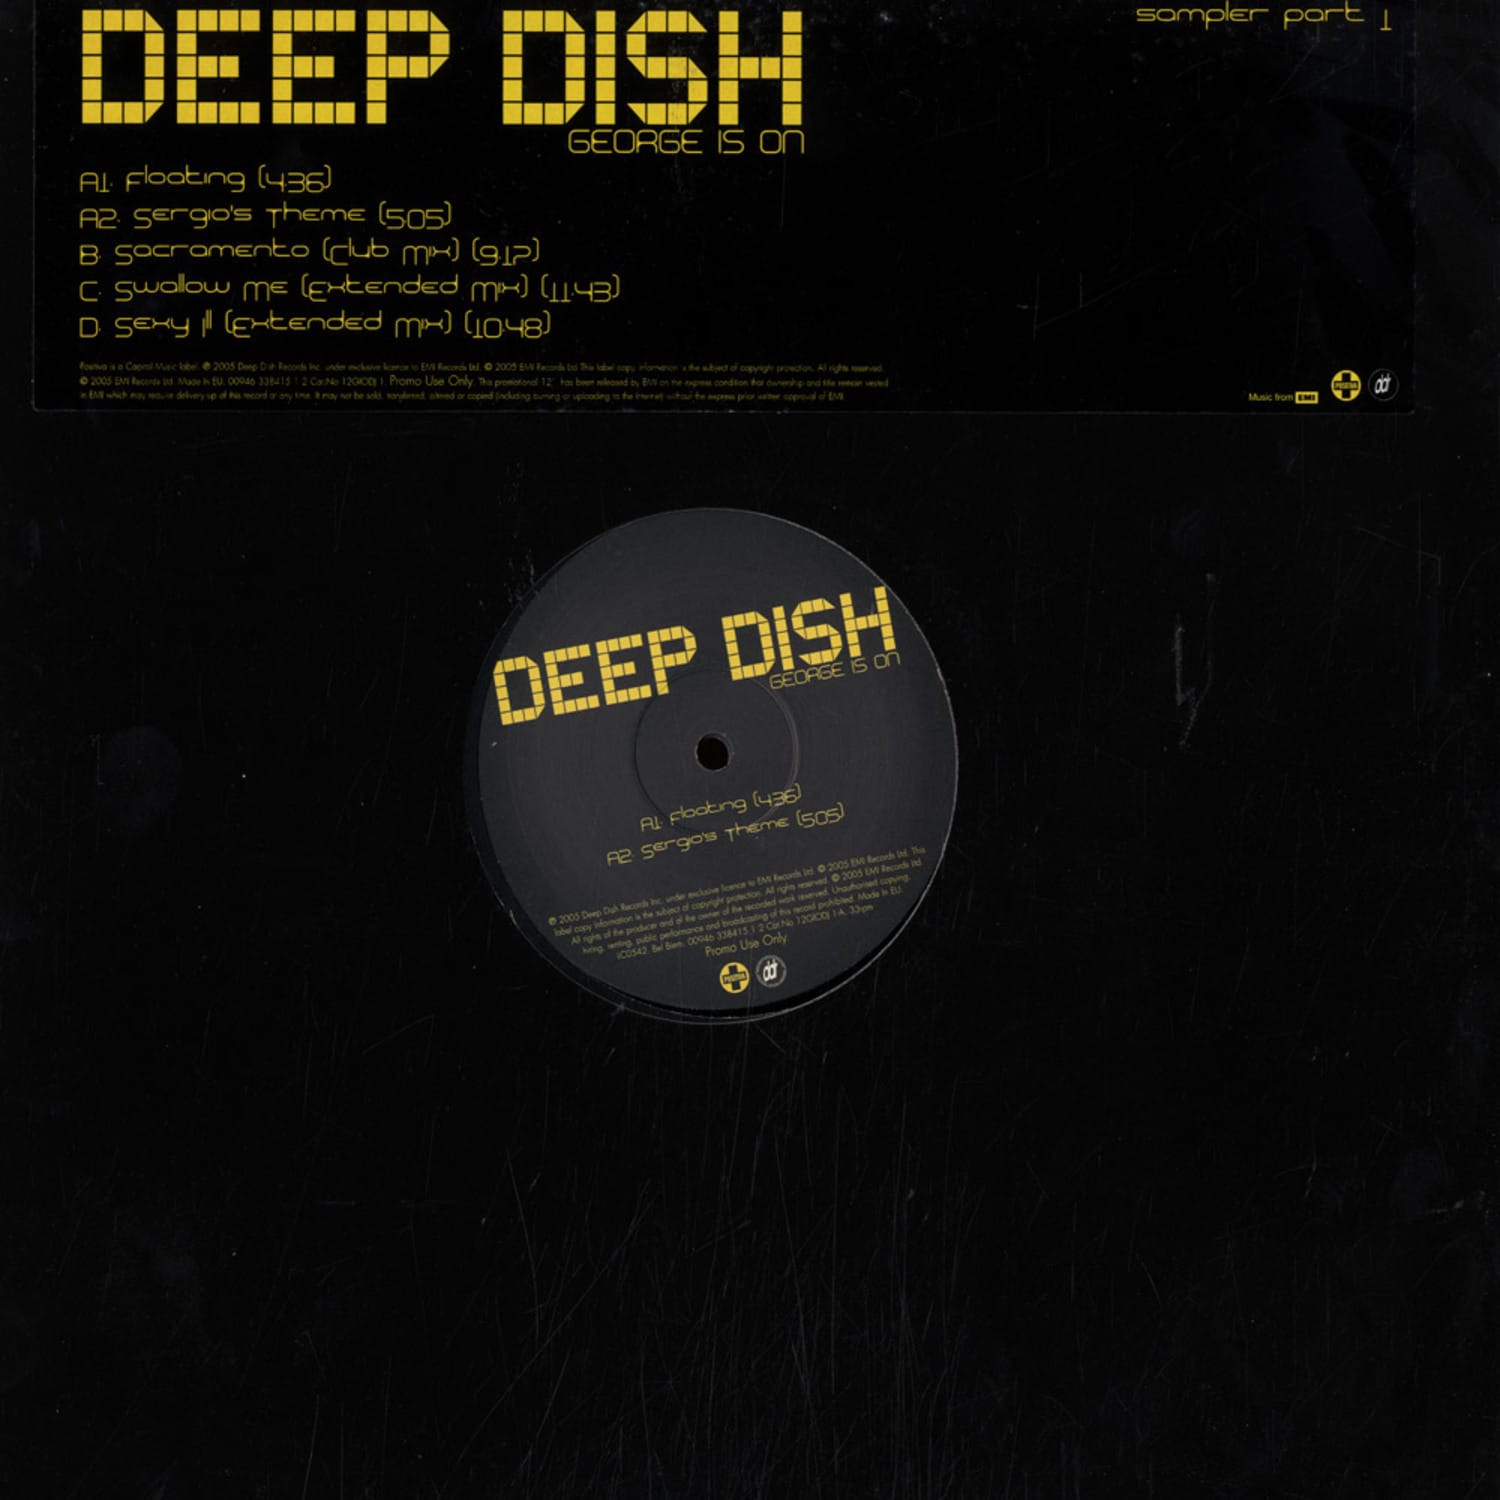 Deep Dish - GEORGE IS ON 1 